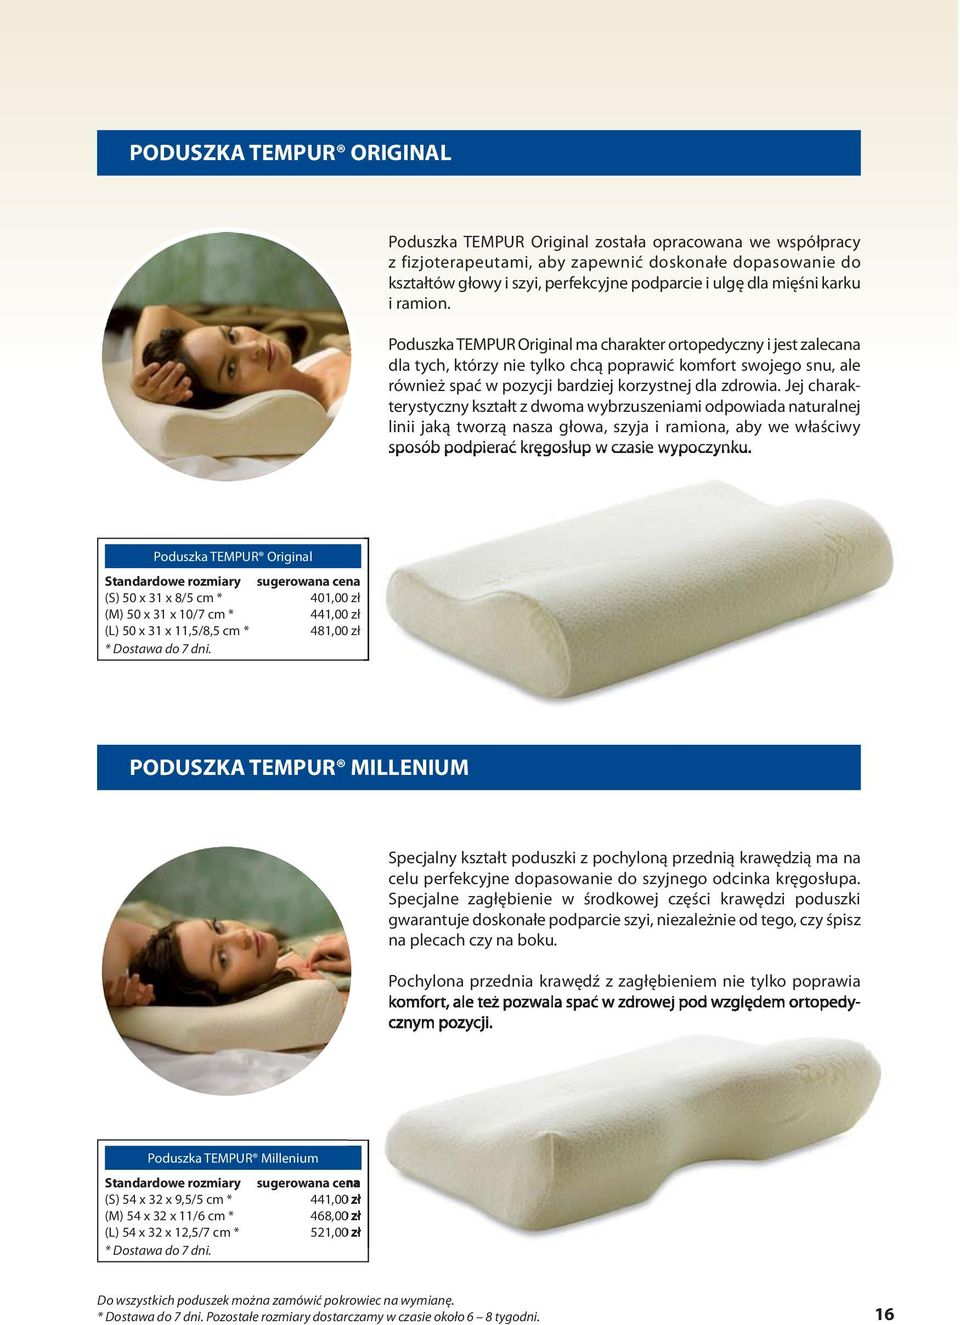 Poduszka TEMPUR Original ma charakter ortopedyczny i jest zalecana dla tych, którzy nie tylko chcą poprawić komfort swojego snu, ale również spać w pozycji bardziej korzystnej dla zdrowia.